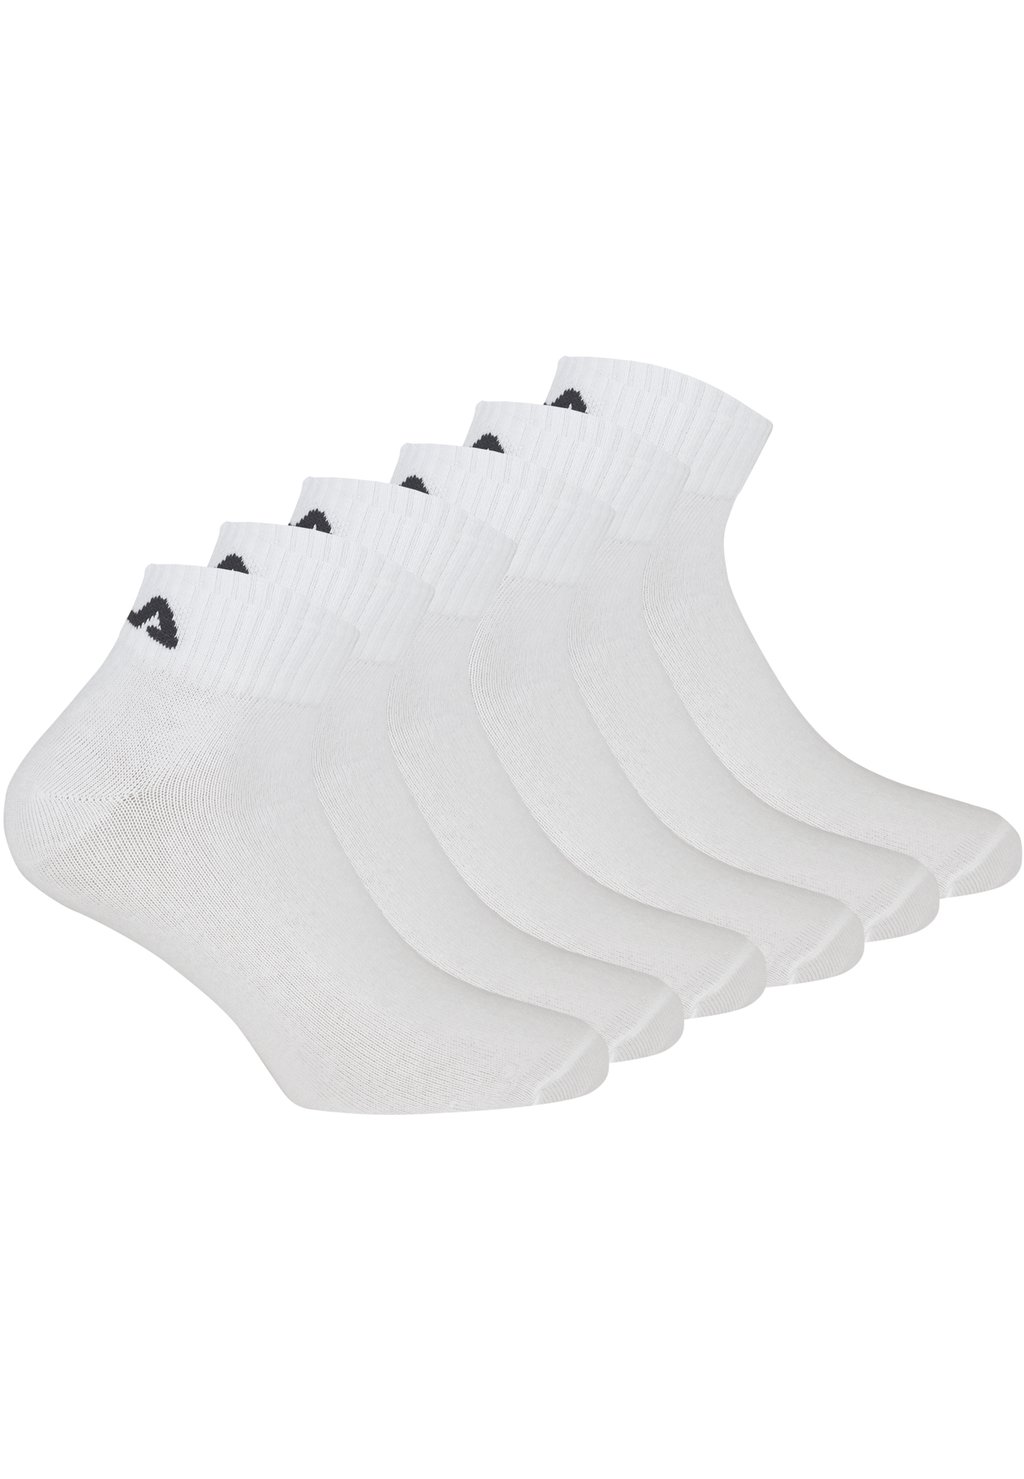 Носки QUARTER SOCKS 6 PACK Fila, цвет white носки quarter socks unisex 6 pack fila цвет navy